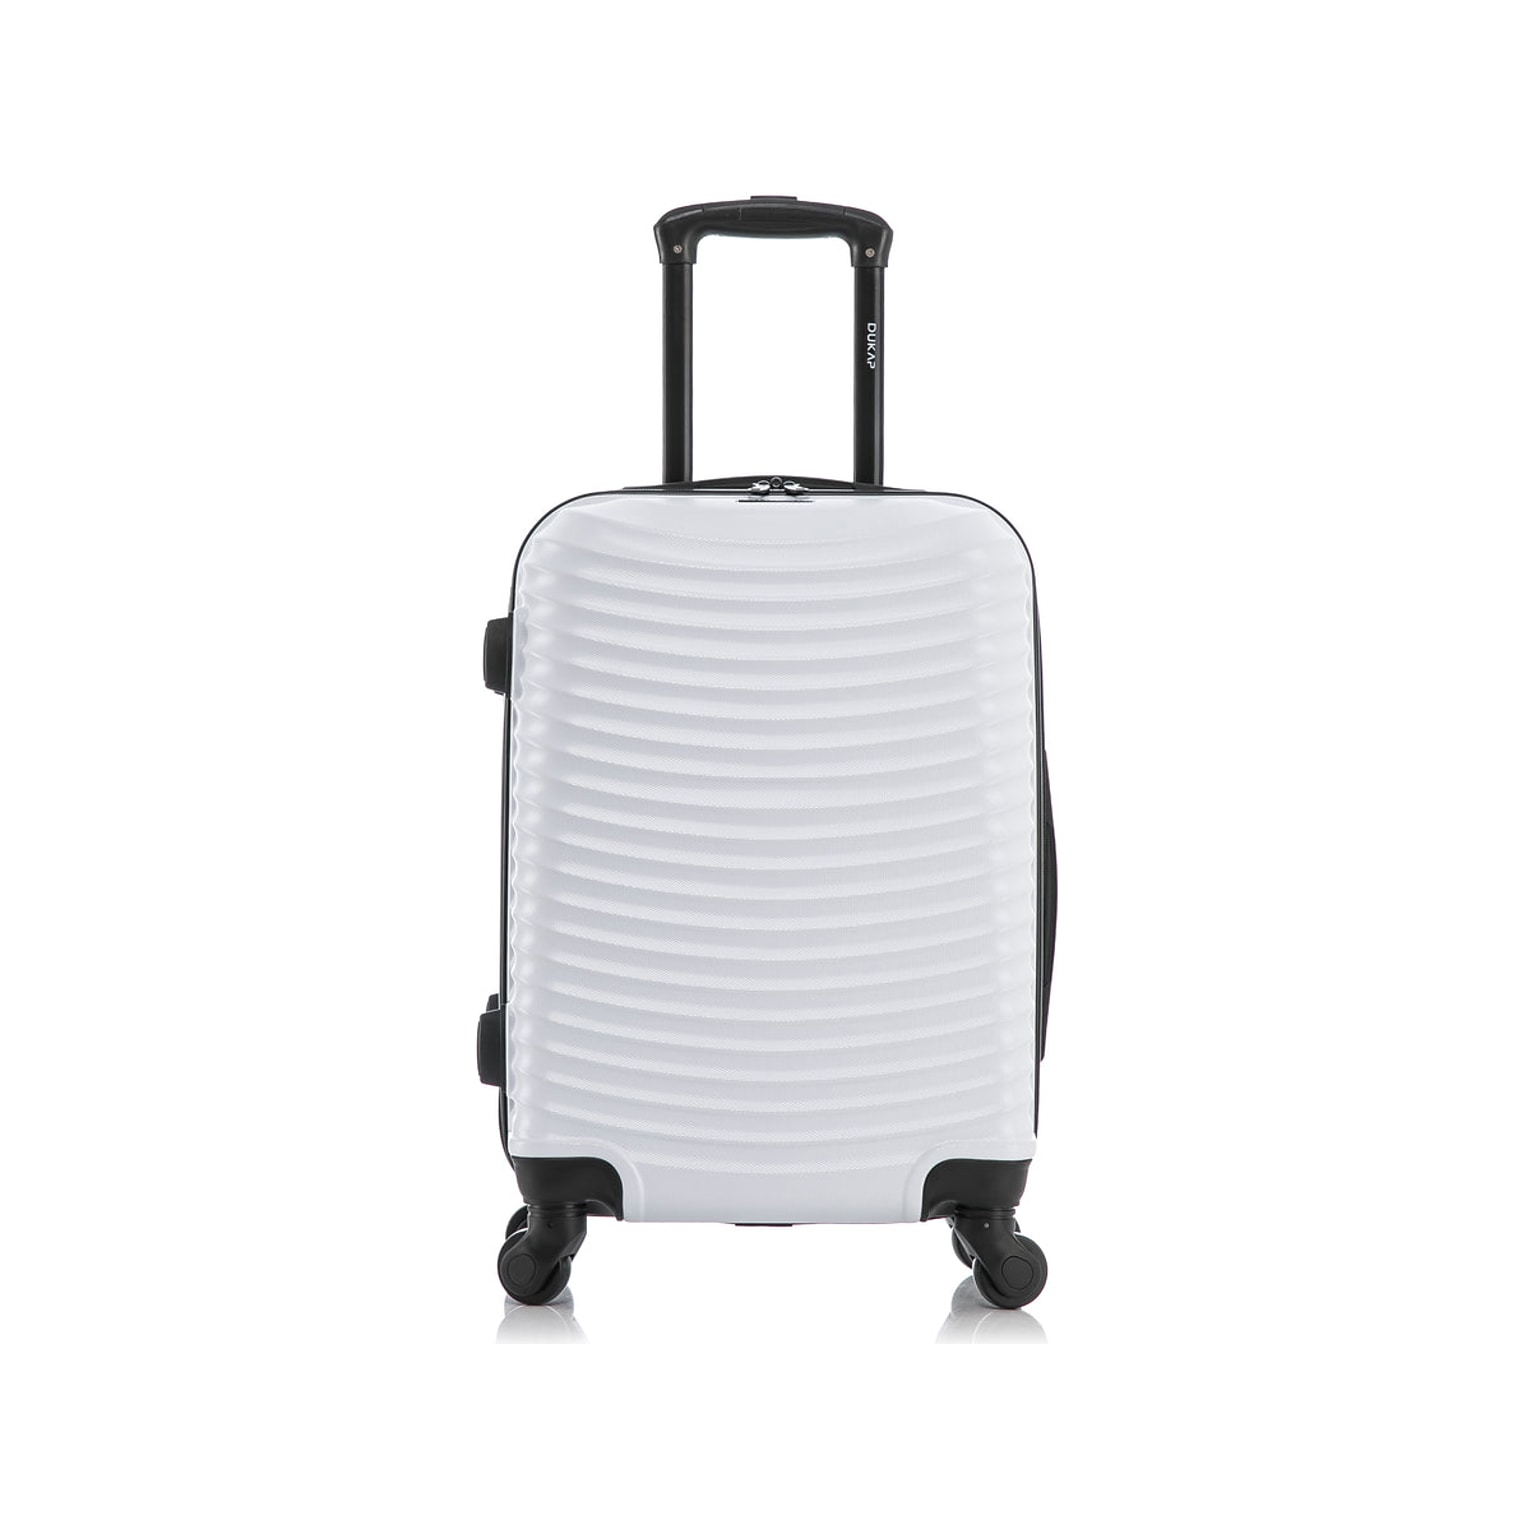 DUKAP Adly 21.45 Hardside Suitcase, 4-Wheeled Spinner, White (DKADL00S-WHI)